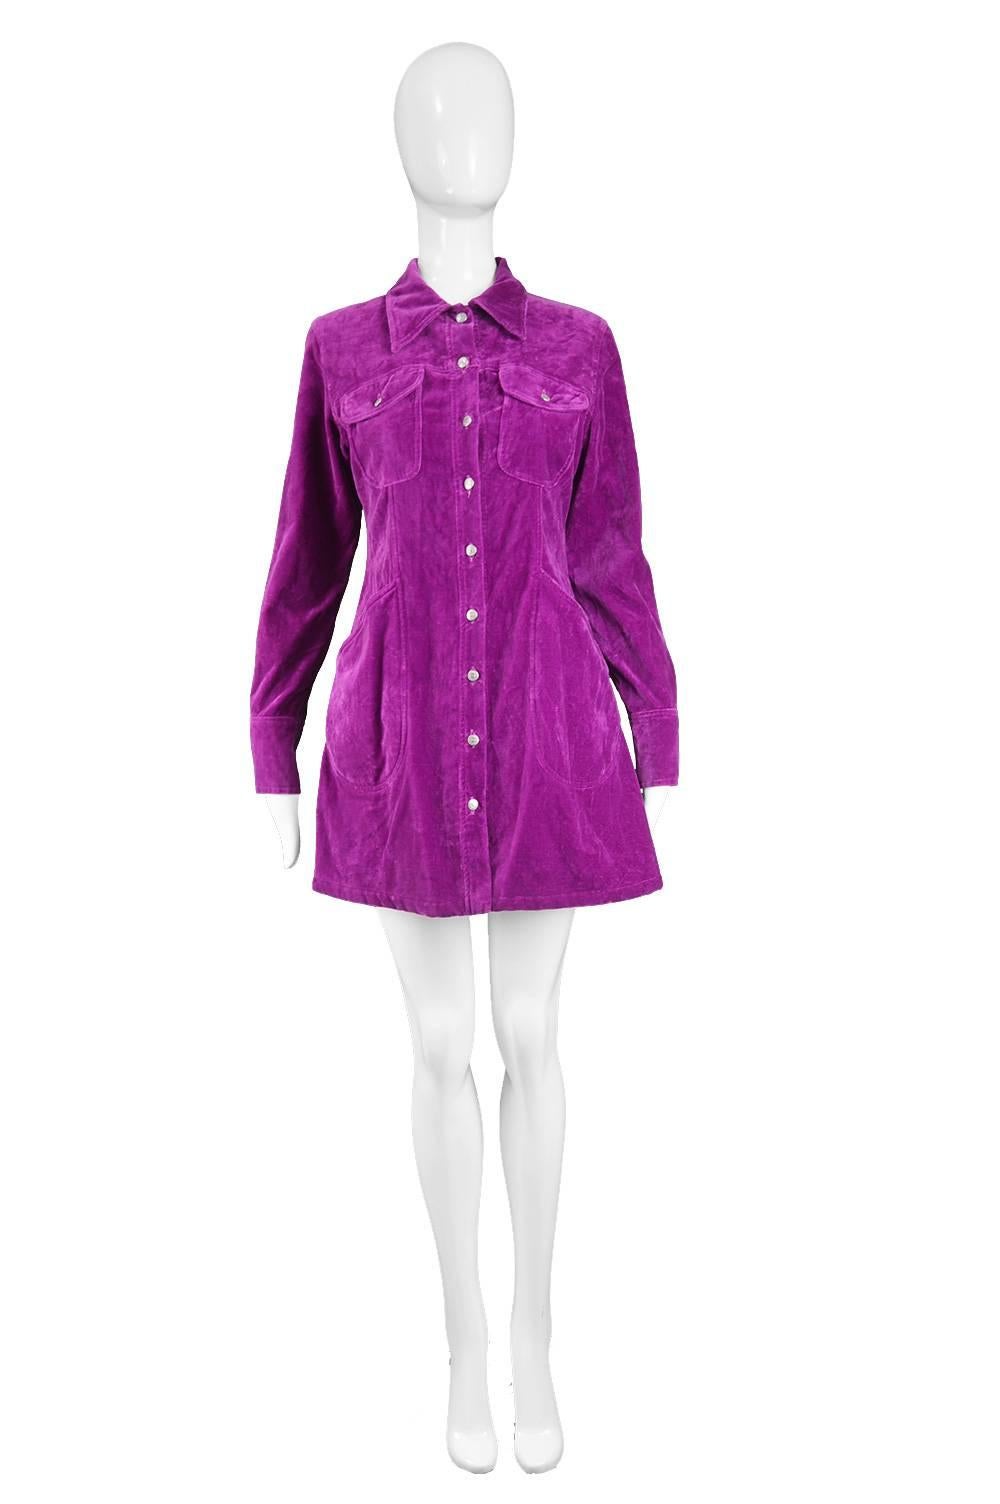 Katharine Hamnett Vintage Magenta Denim Mini Shirtdress, 1990s

Estimated Size: UK 12/ US 8/ EU 40. Please check measurements.
Bust - 36” / 91cm
Waist - 30” / 76cm
Hips - 38” / 96cm
Length (Shoulder to Hem) - 30” / 76cm
Shoulder to Shoulder - 15” /